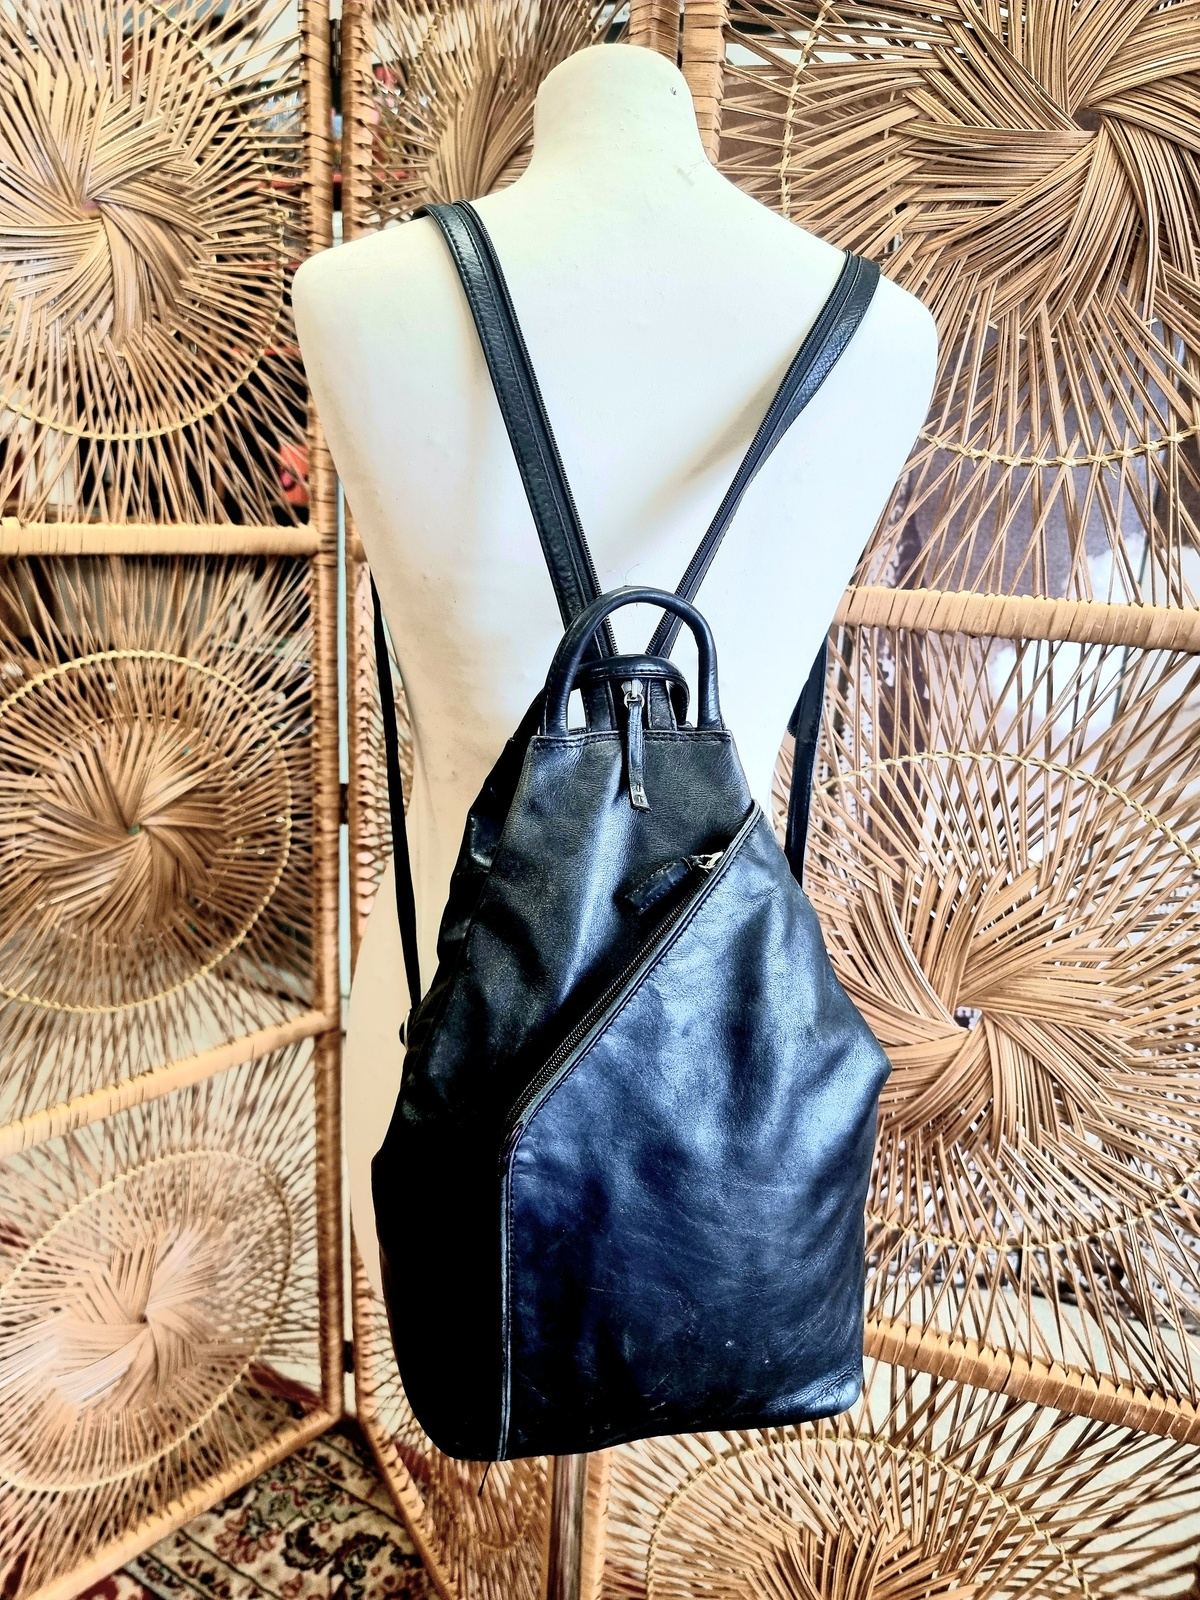 Vintage Leather Backpack